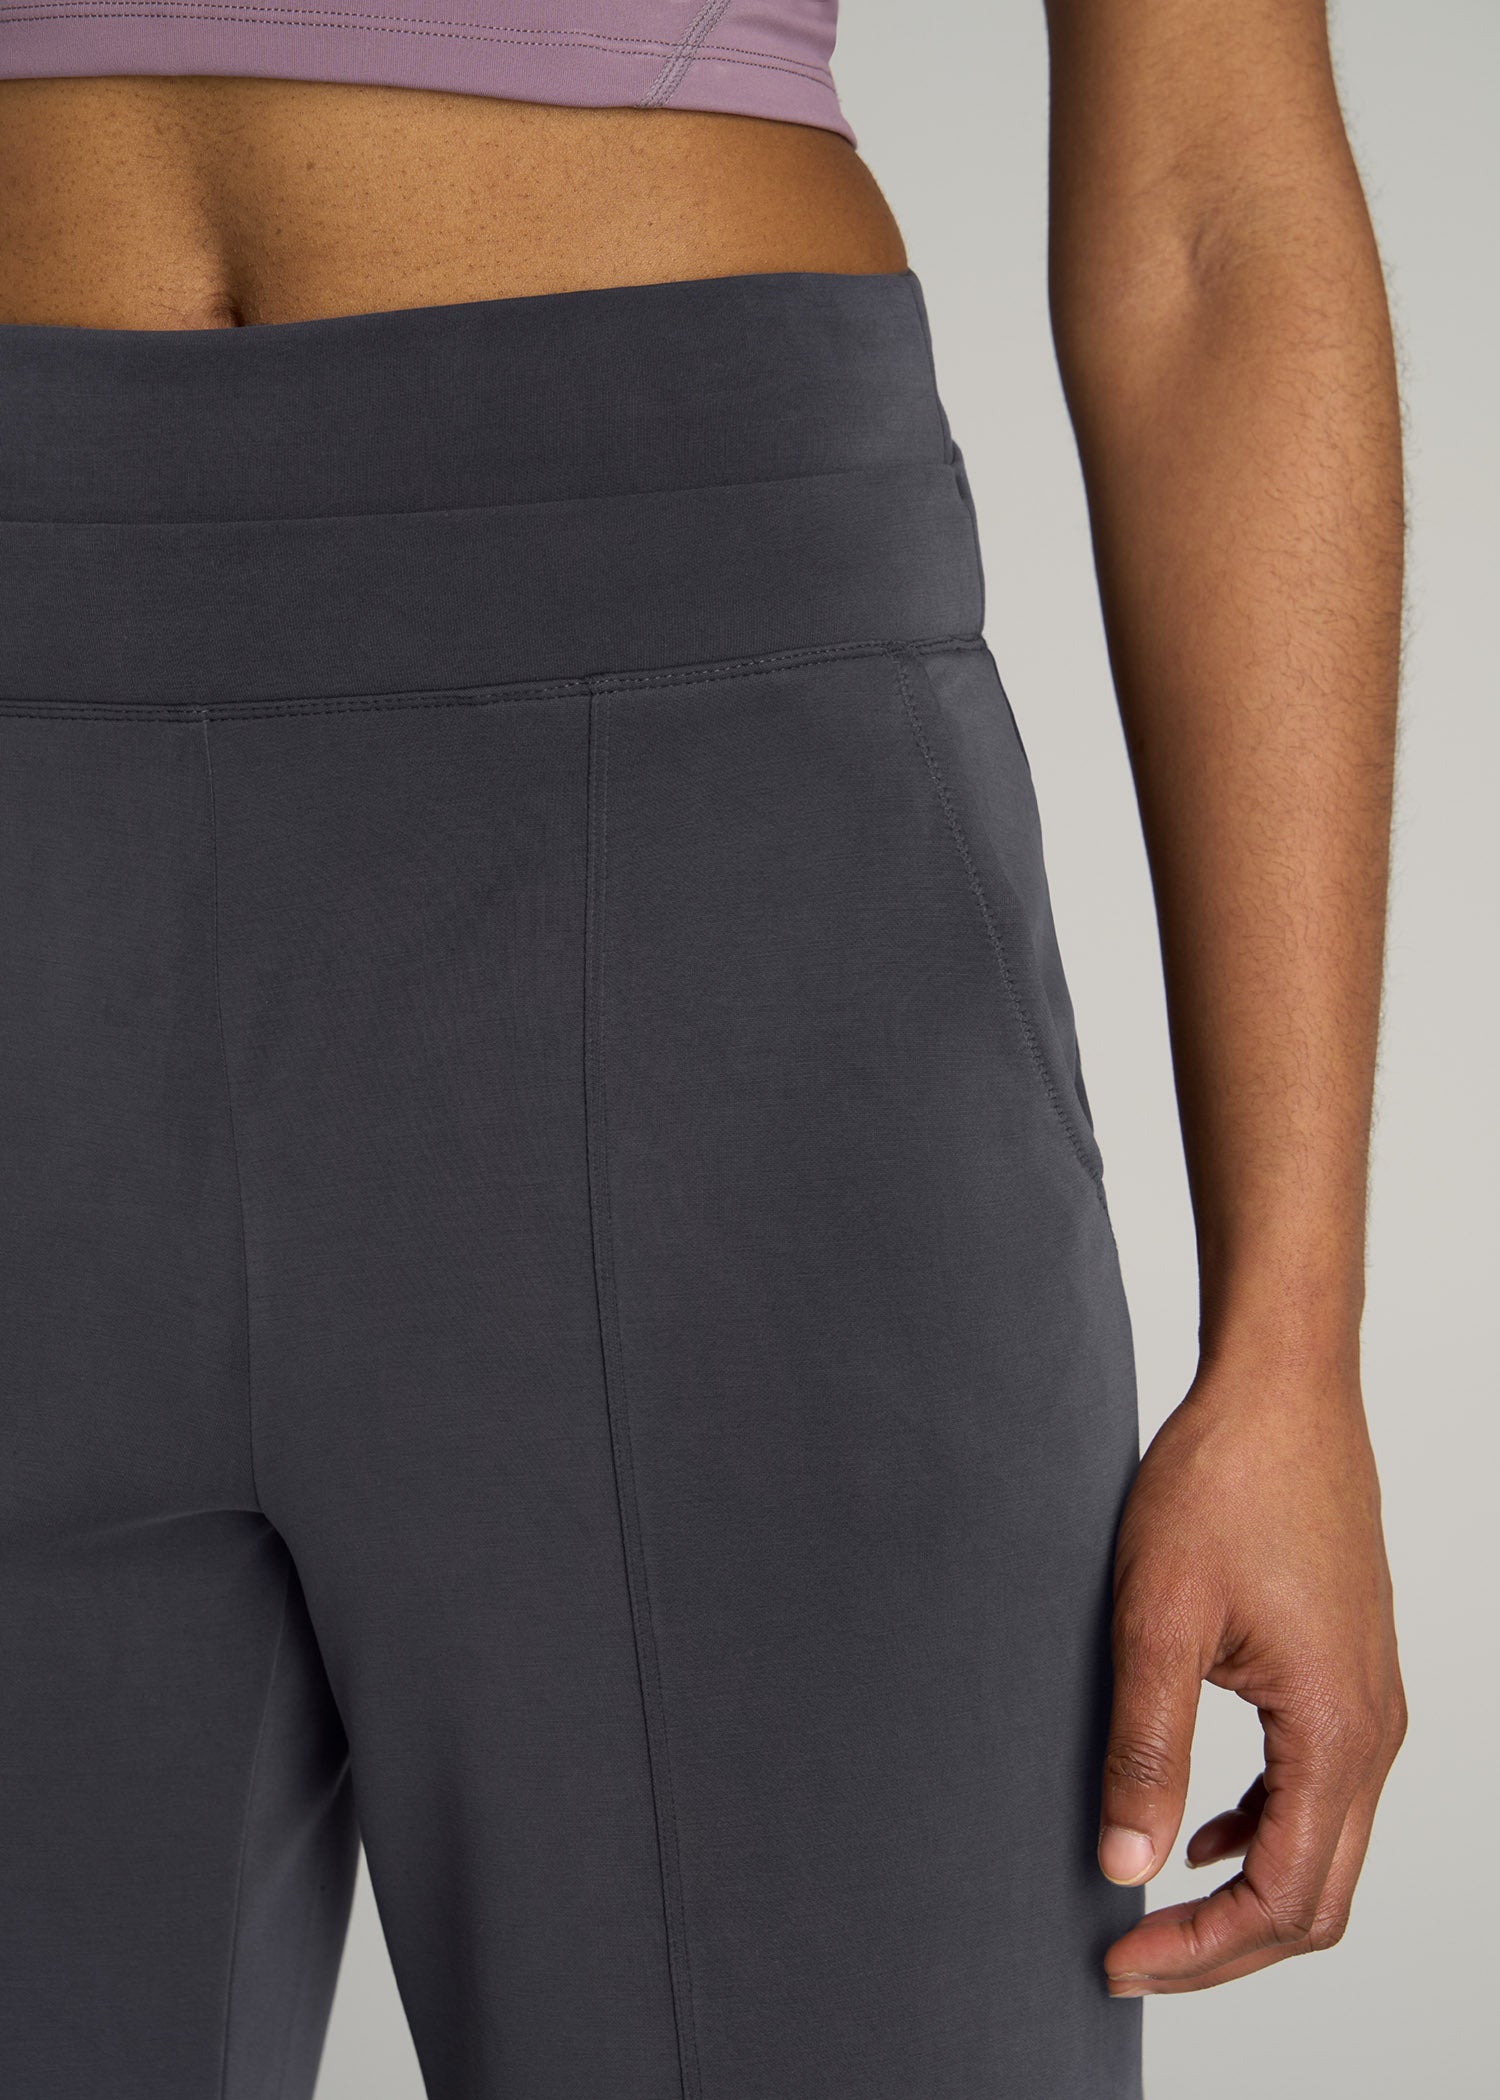 Womens Soft Pants (X-Large, Charcoal)